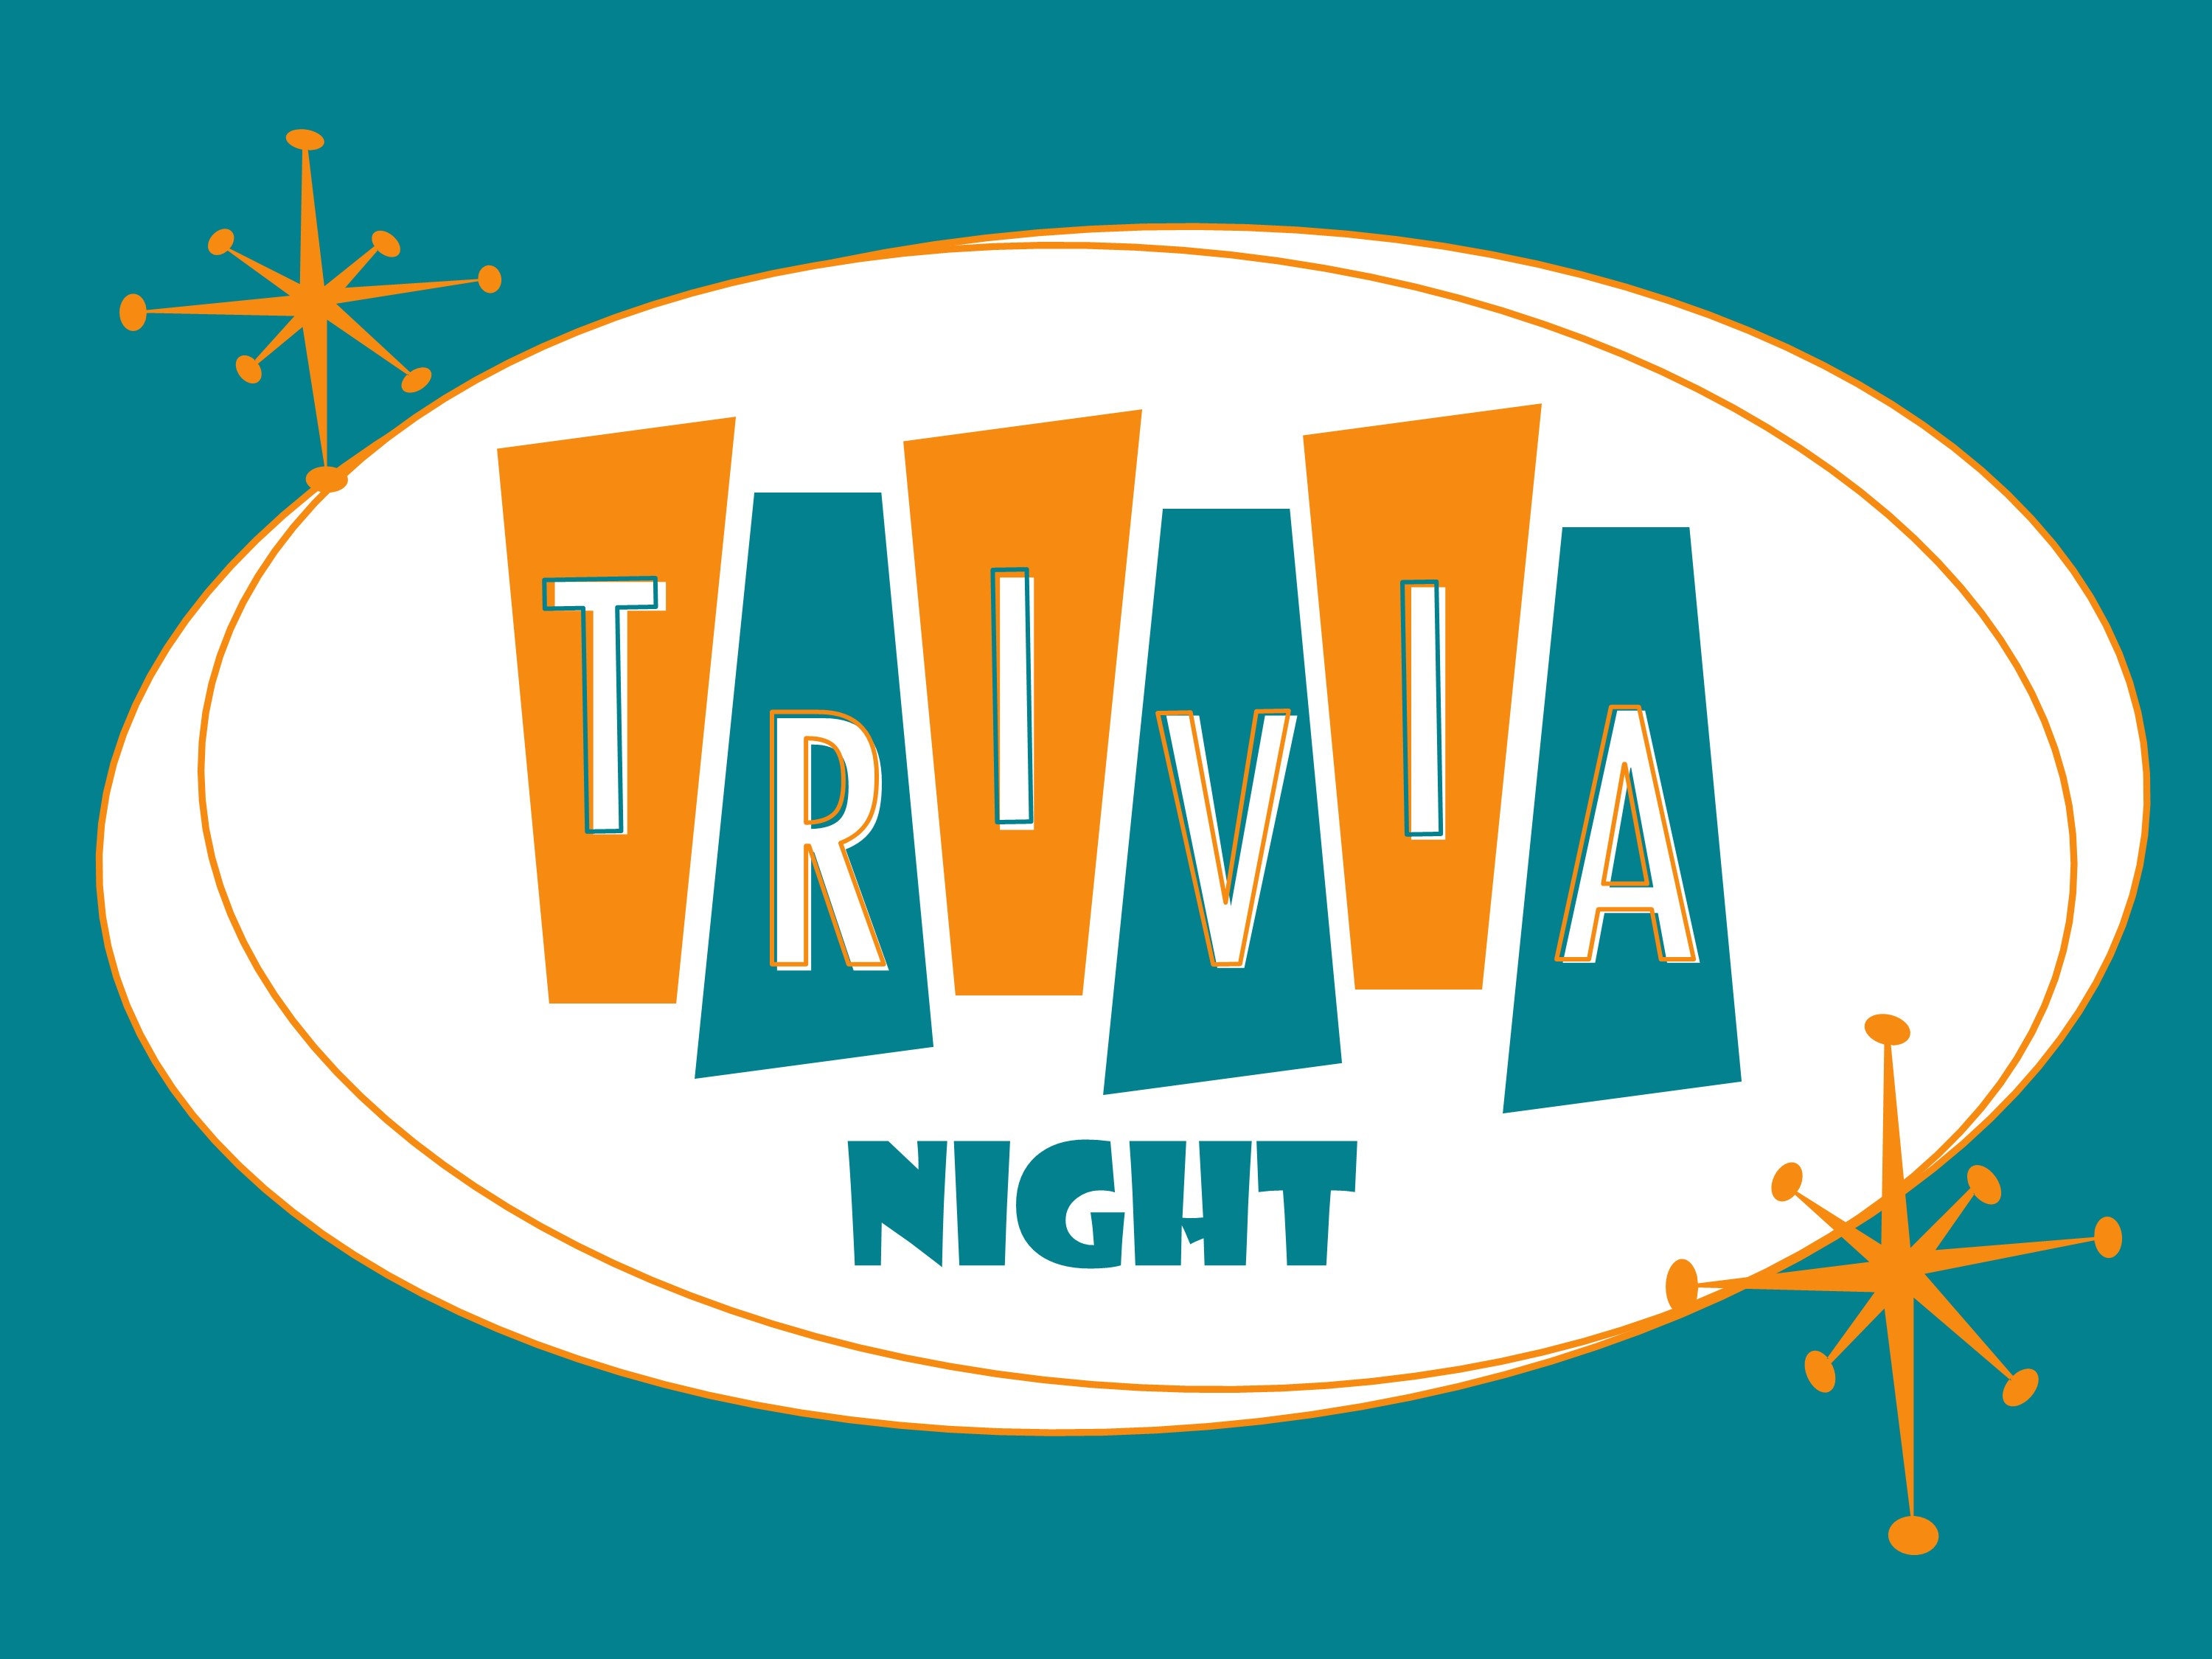 Trivia Night image